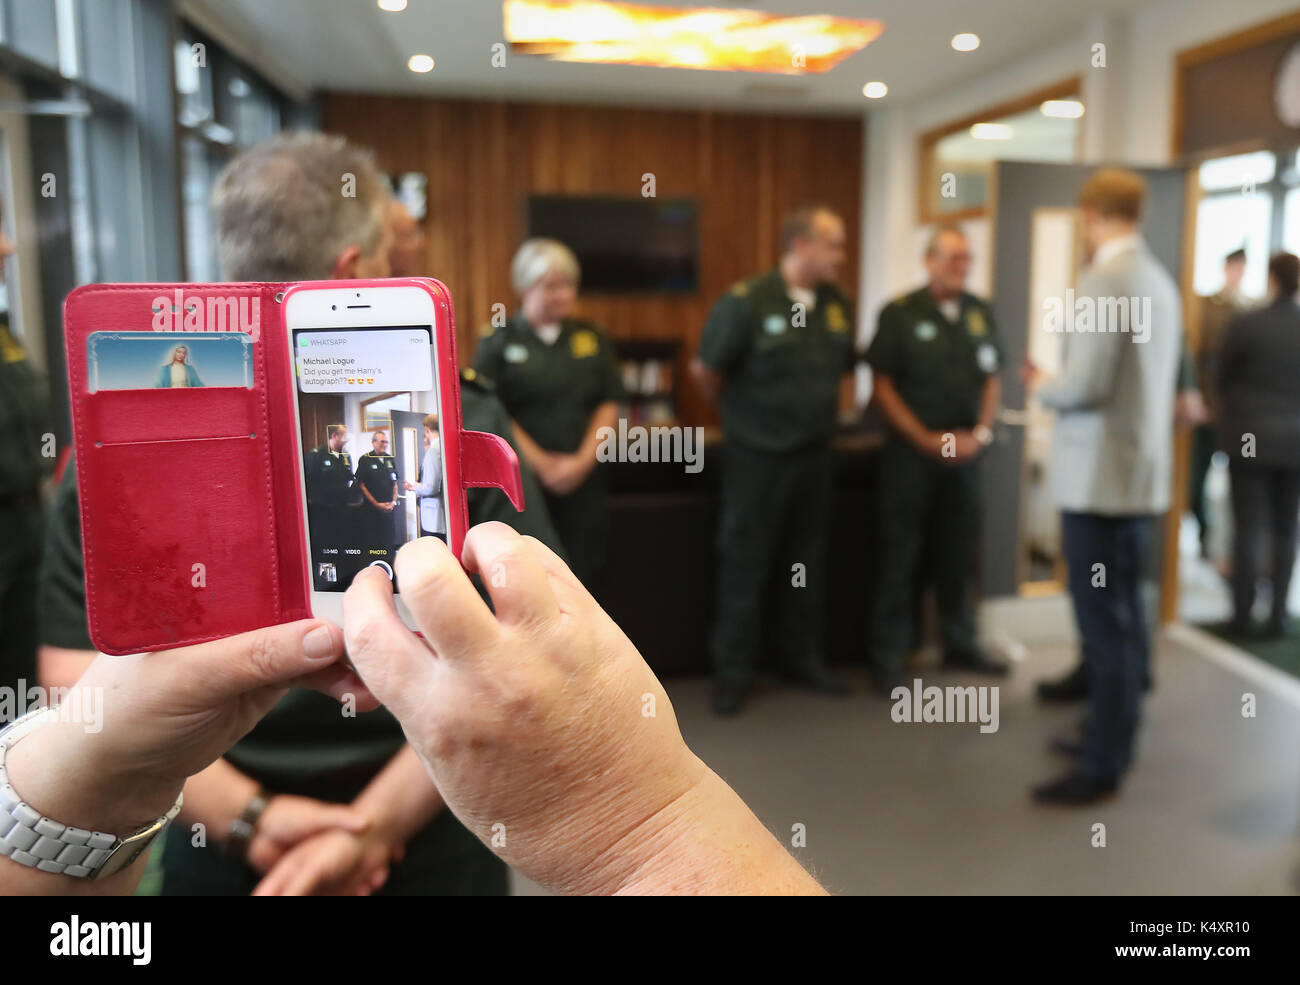 Ambulanza care assistant diane moody prende un telefono foto del principe Harry come egli incontra gli equipaggi di ambulanza durante una visita a ballymena divisione nord hq e stazione di ambulanza durante una visita in Irlanda del Nord. Foto Stock